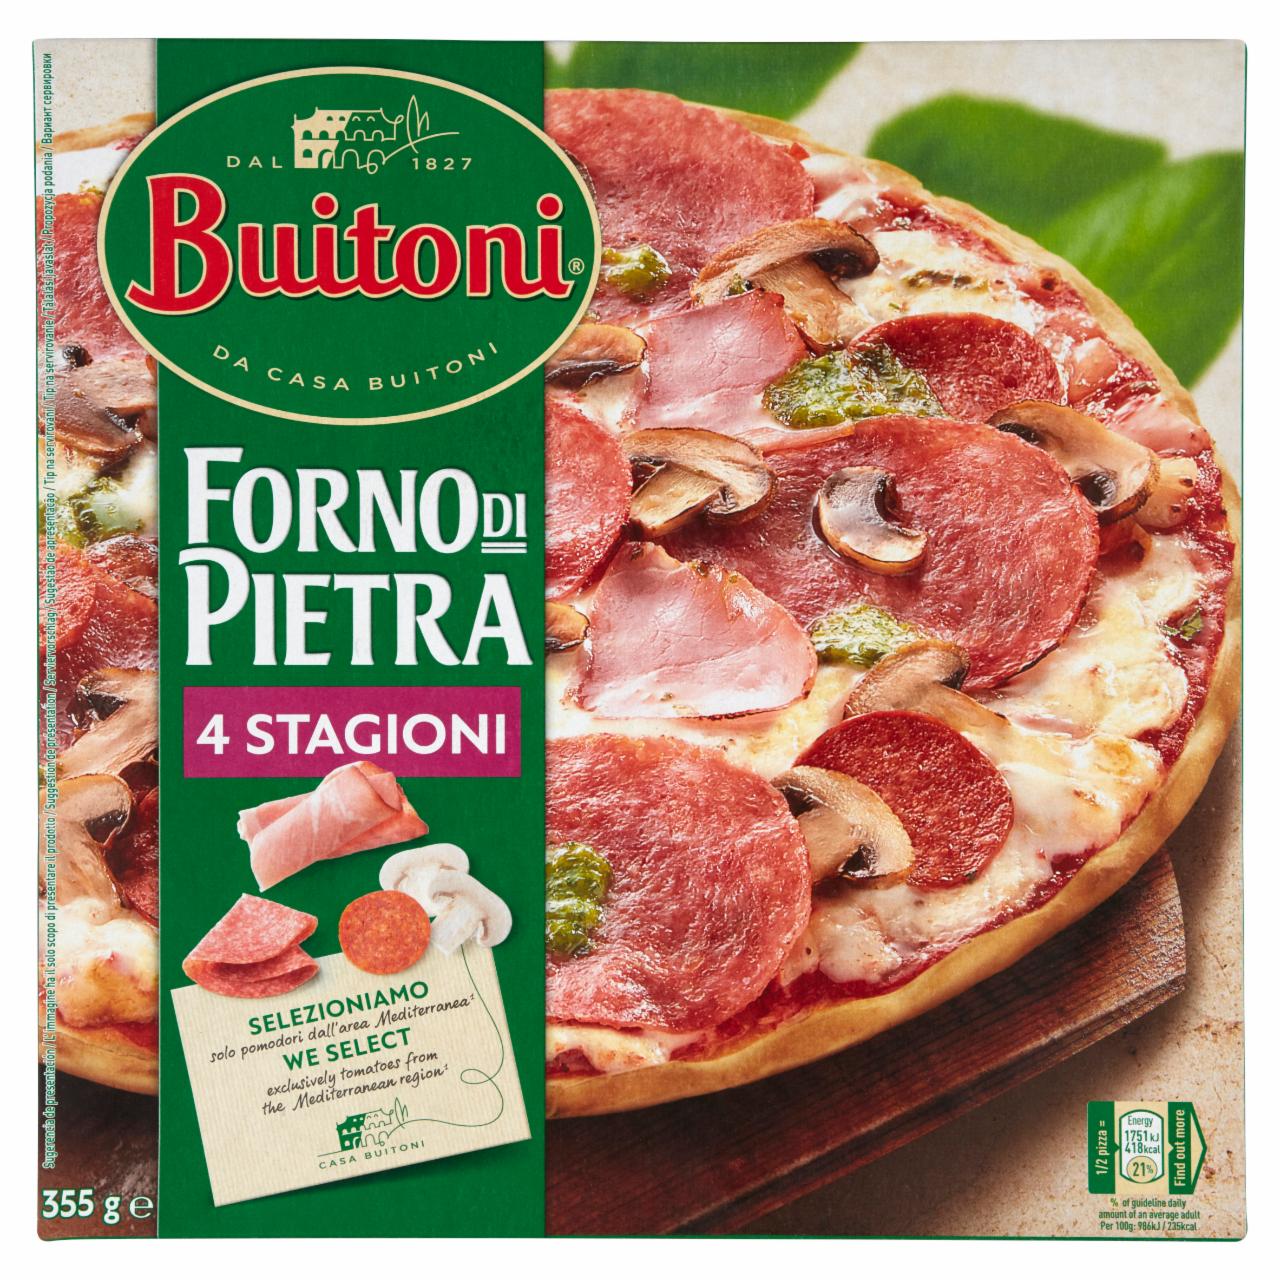 Képek - Buitoni gyorsfagyasztott pizza sajttal, szalámival, gombával és főtt füstölt sonkával 355 g